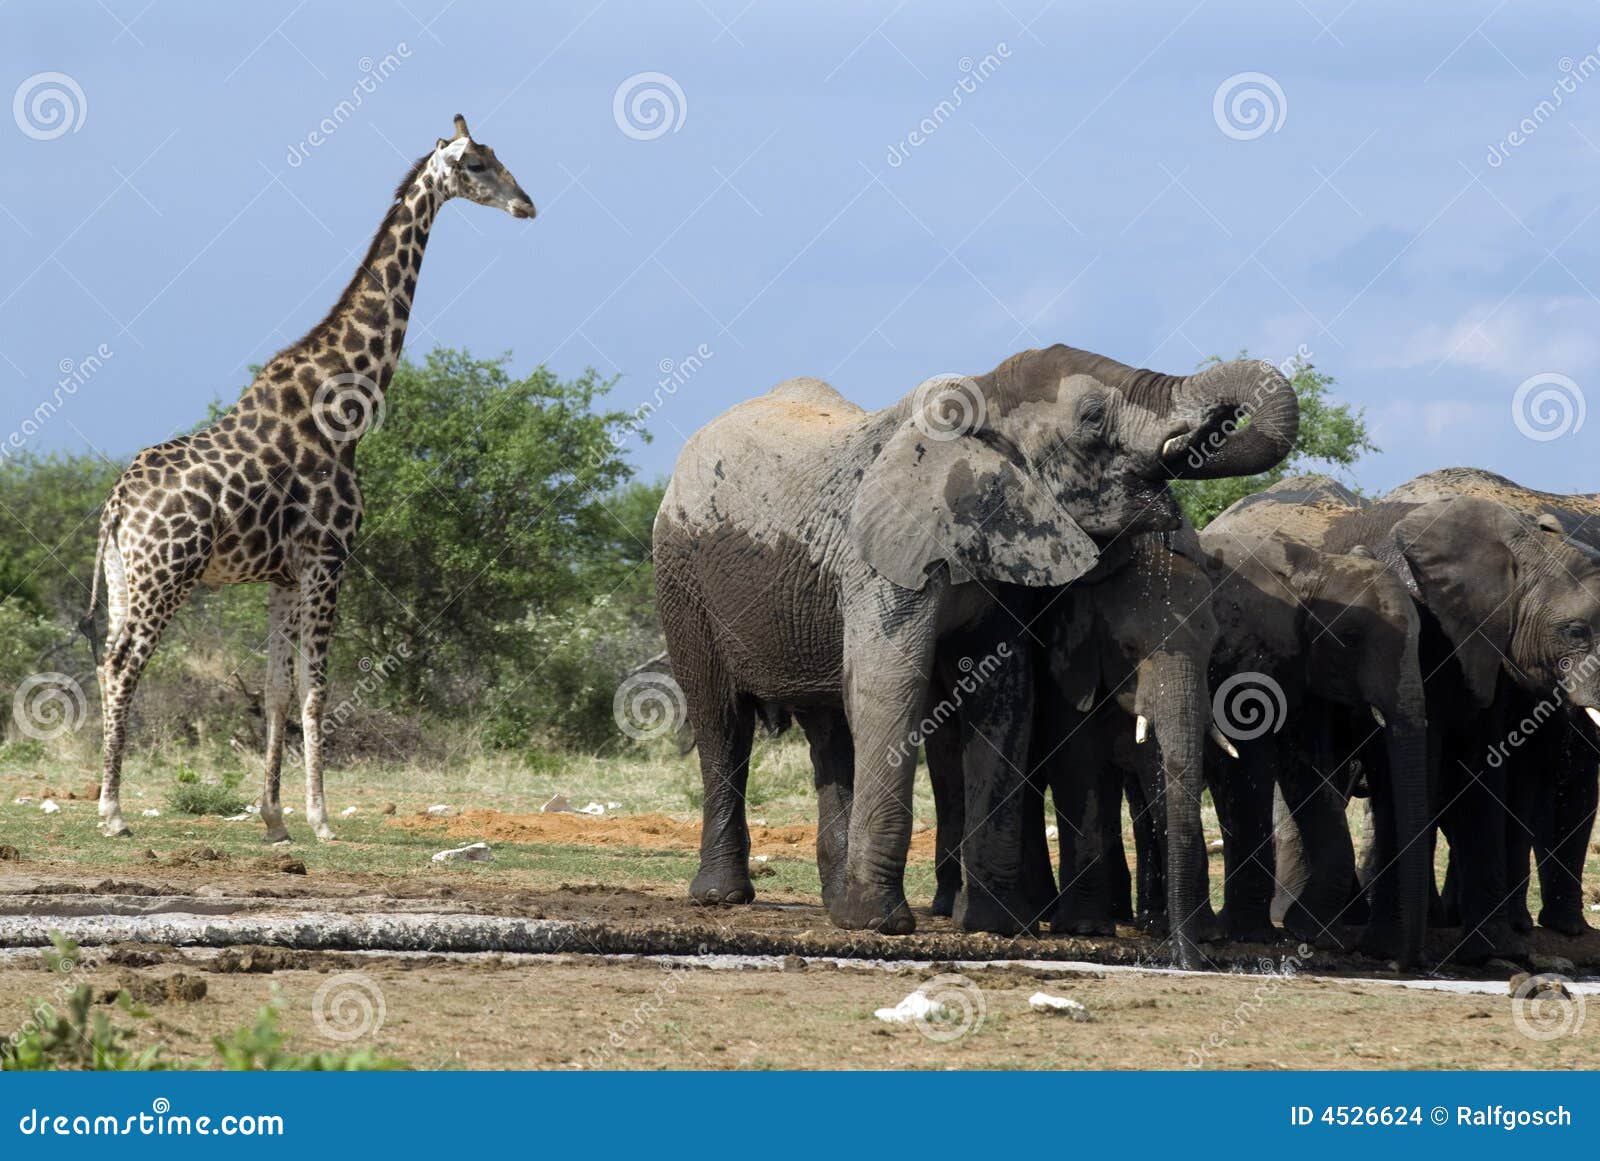 elephants in etosha nationalpark, namibia